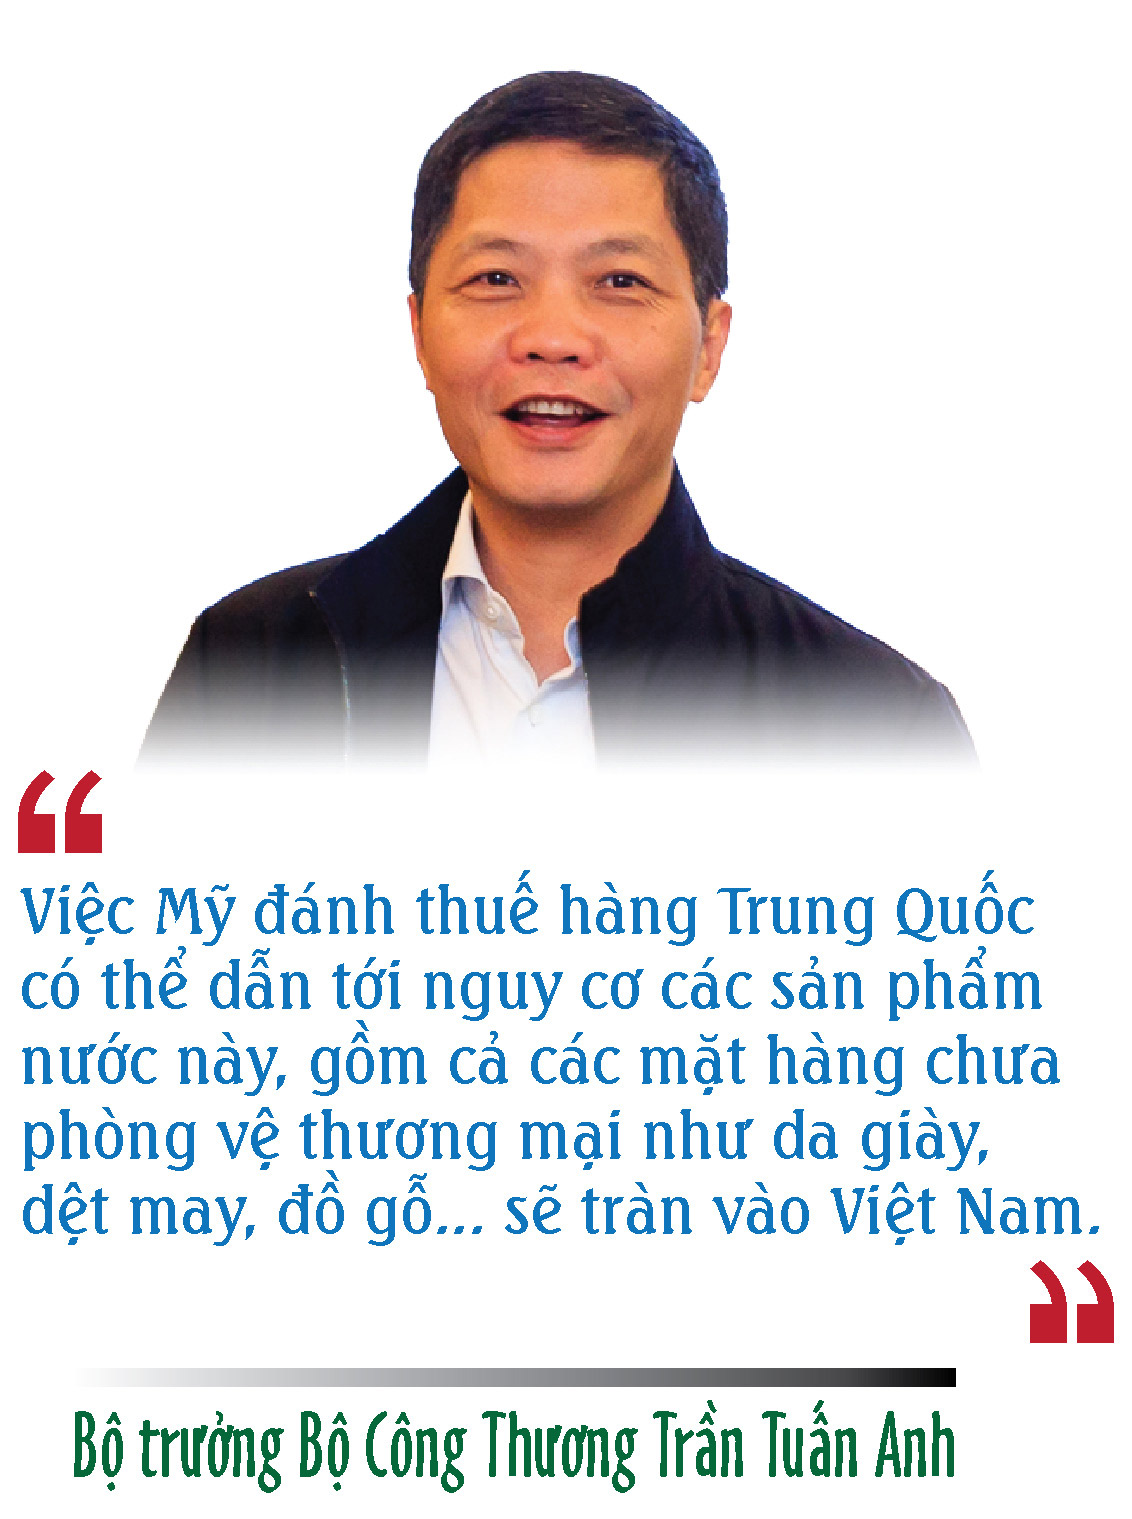 Chiến tranh thương mại Mỹ - Trung: Việt Nam đón cơ hội từ “bão” - 13